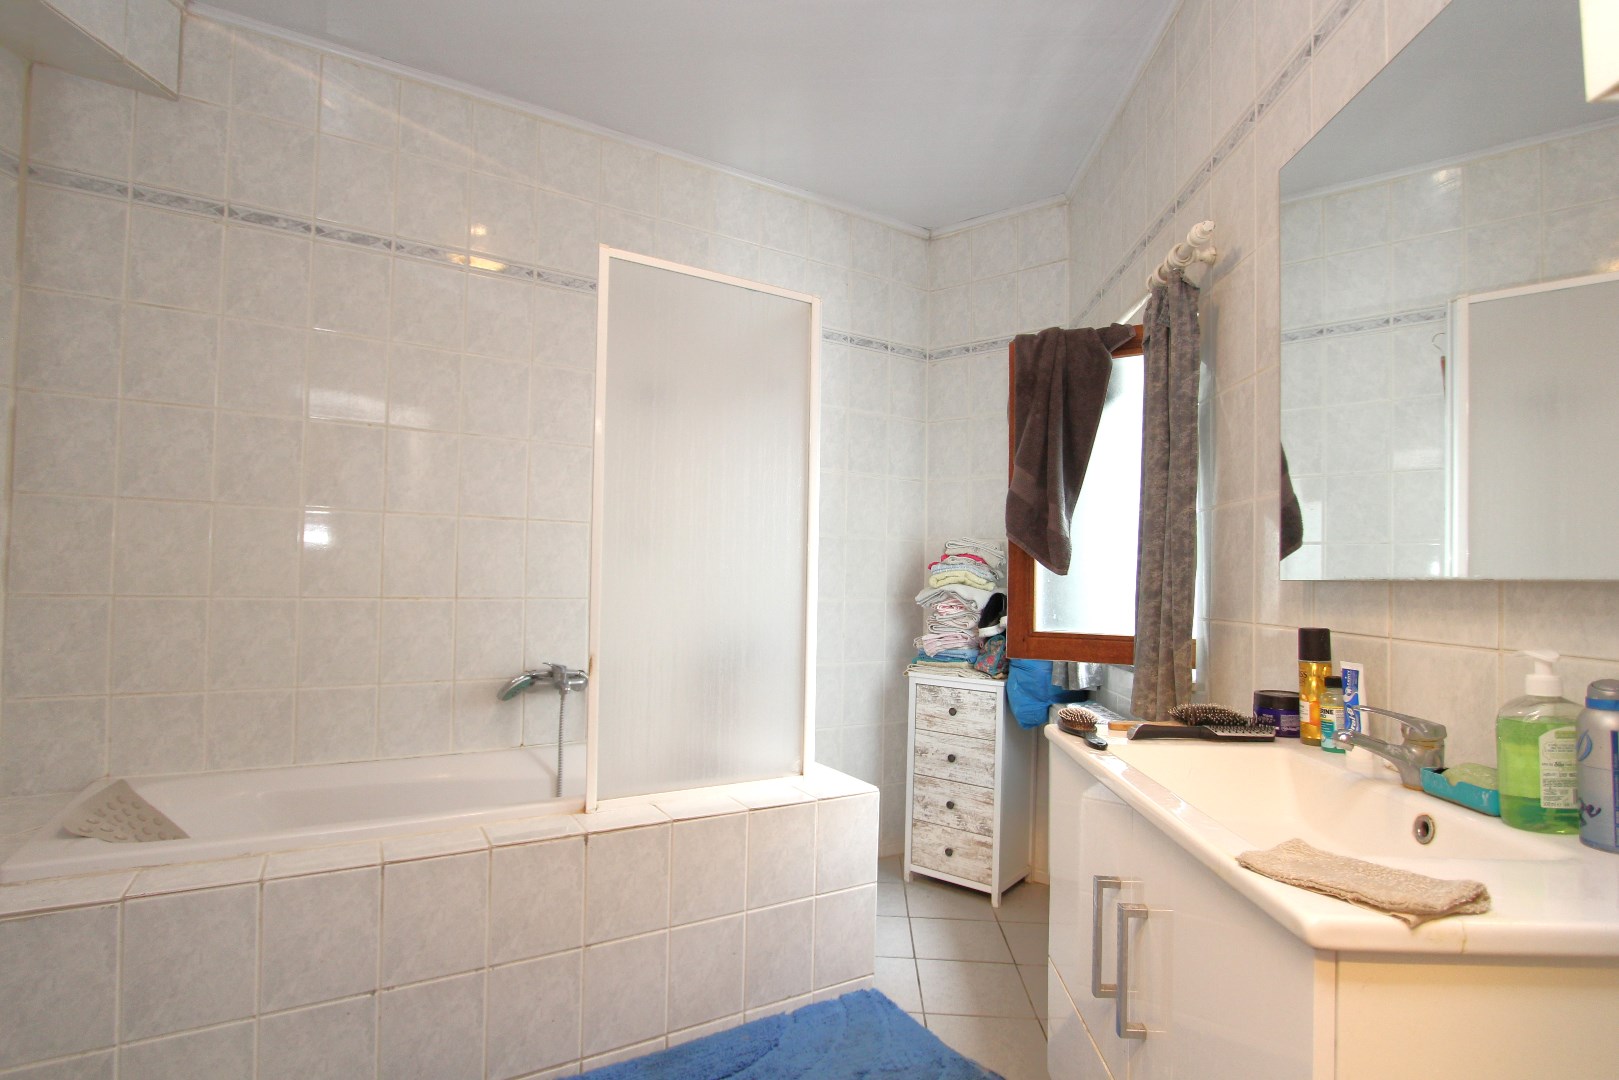 Badkamer met ligbad, enkele lavabo en toilet